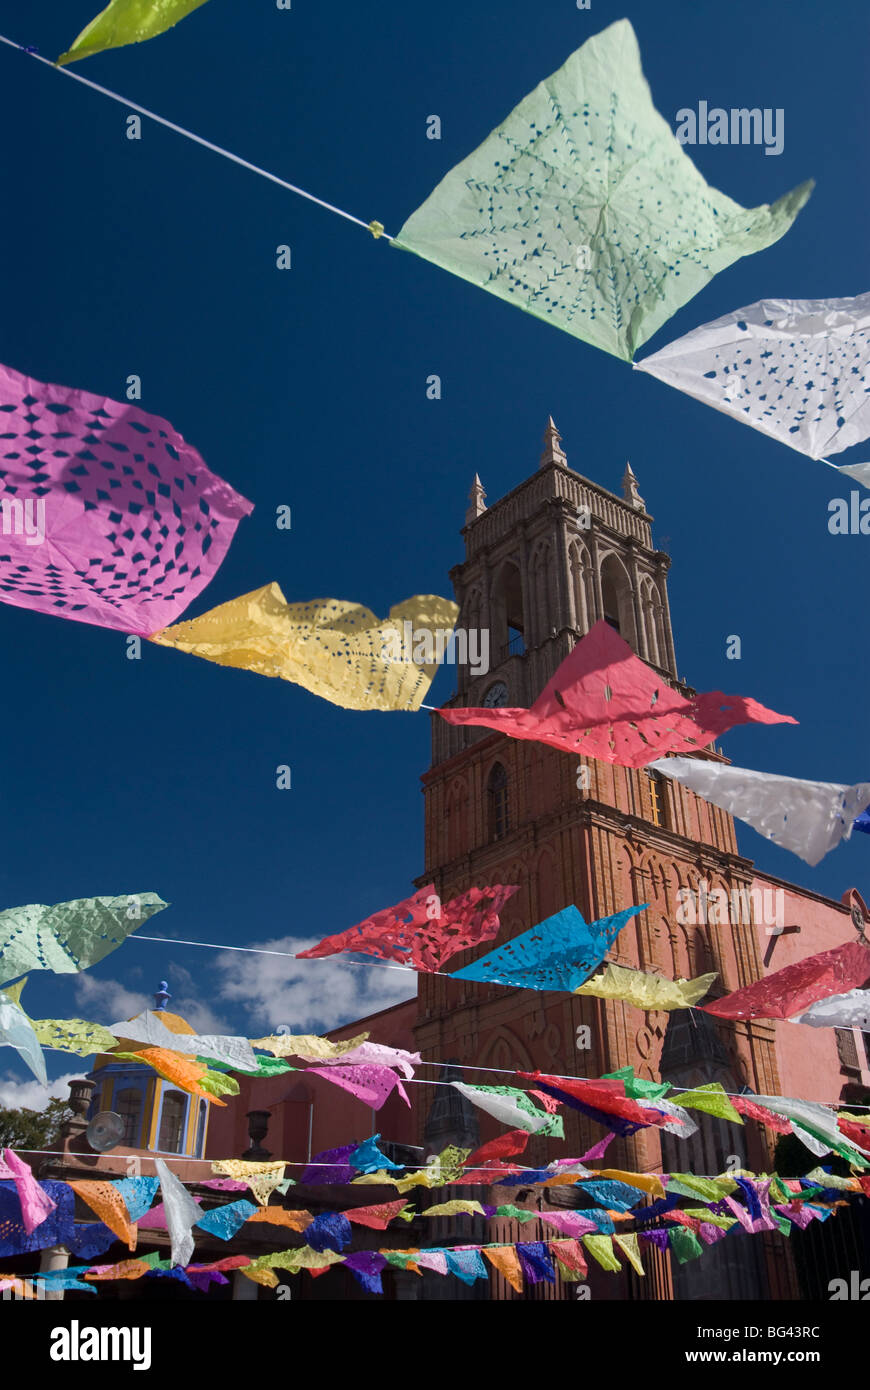 Decorations, Day of the Dead, Iglesia de San Rafael in background, Plaza Principal, San Miguel de Allende, Guanajuato, Mexico Stock Photo